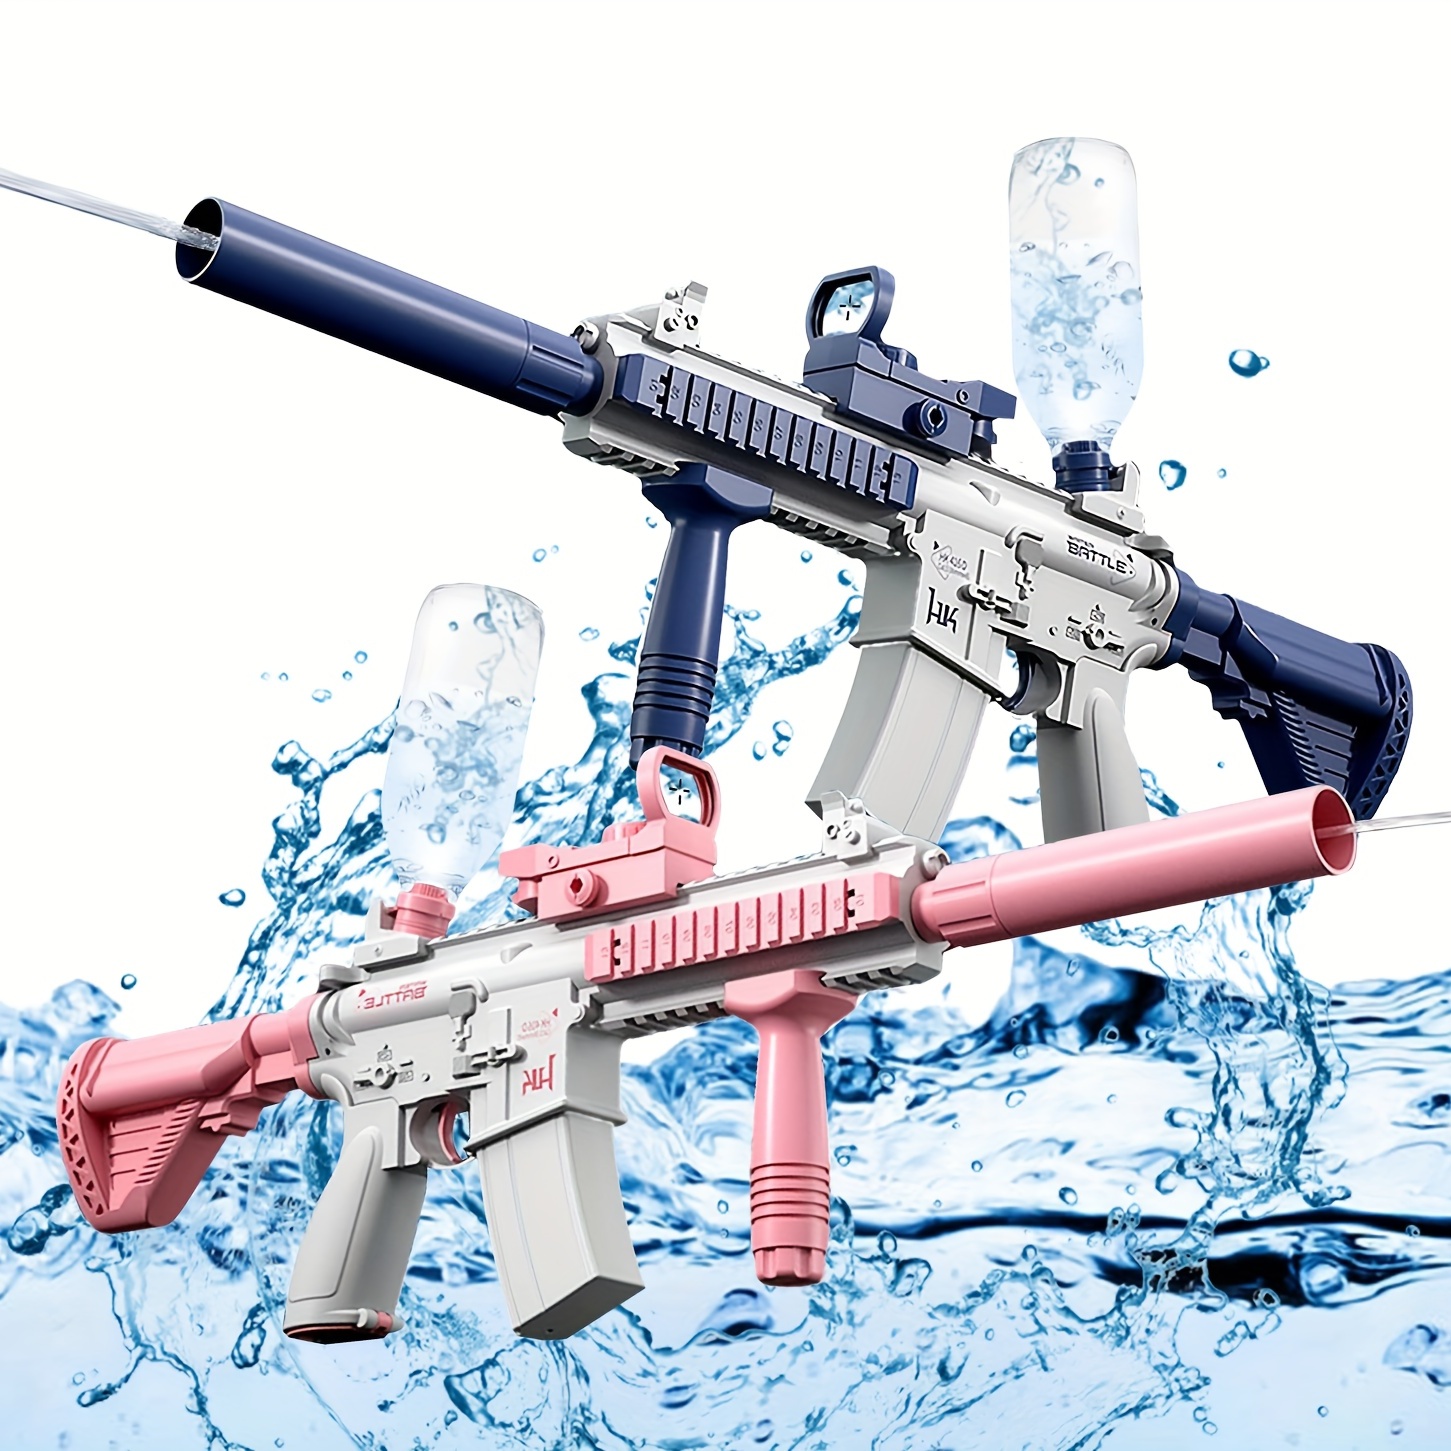 Pistolet a Eau Electrique - Puissant Automatique Water Gun Enfants